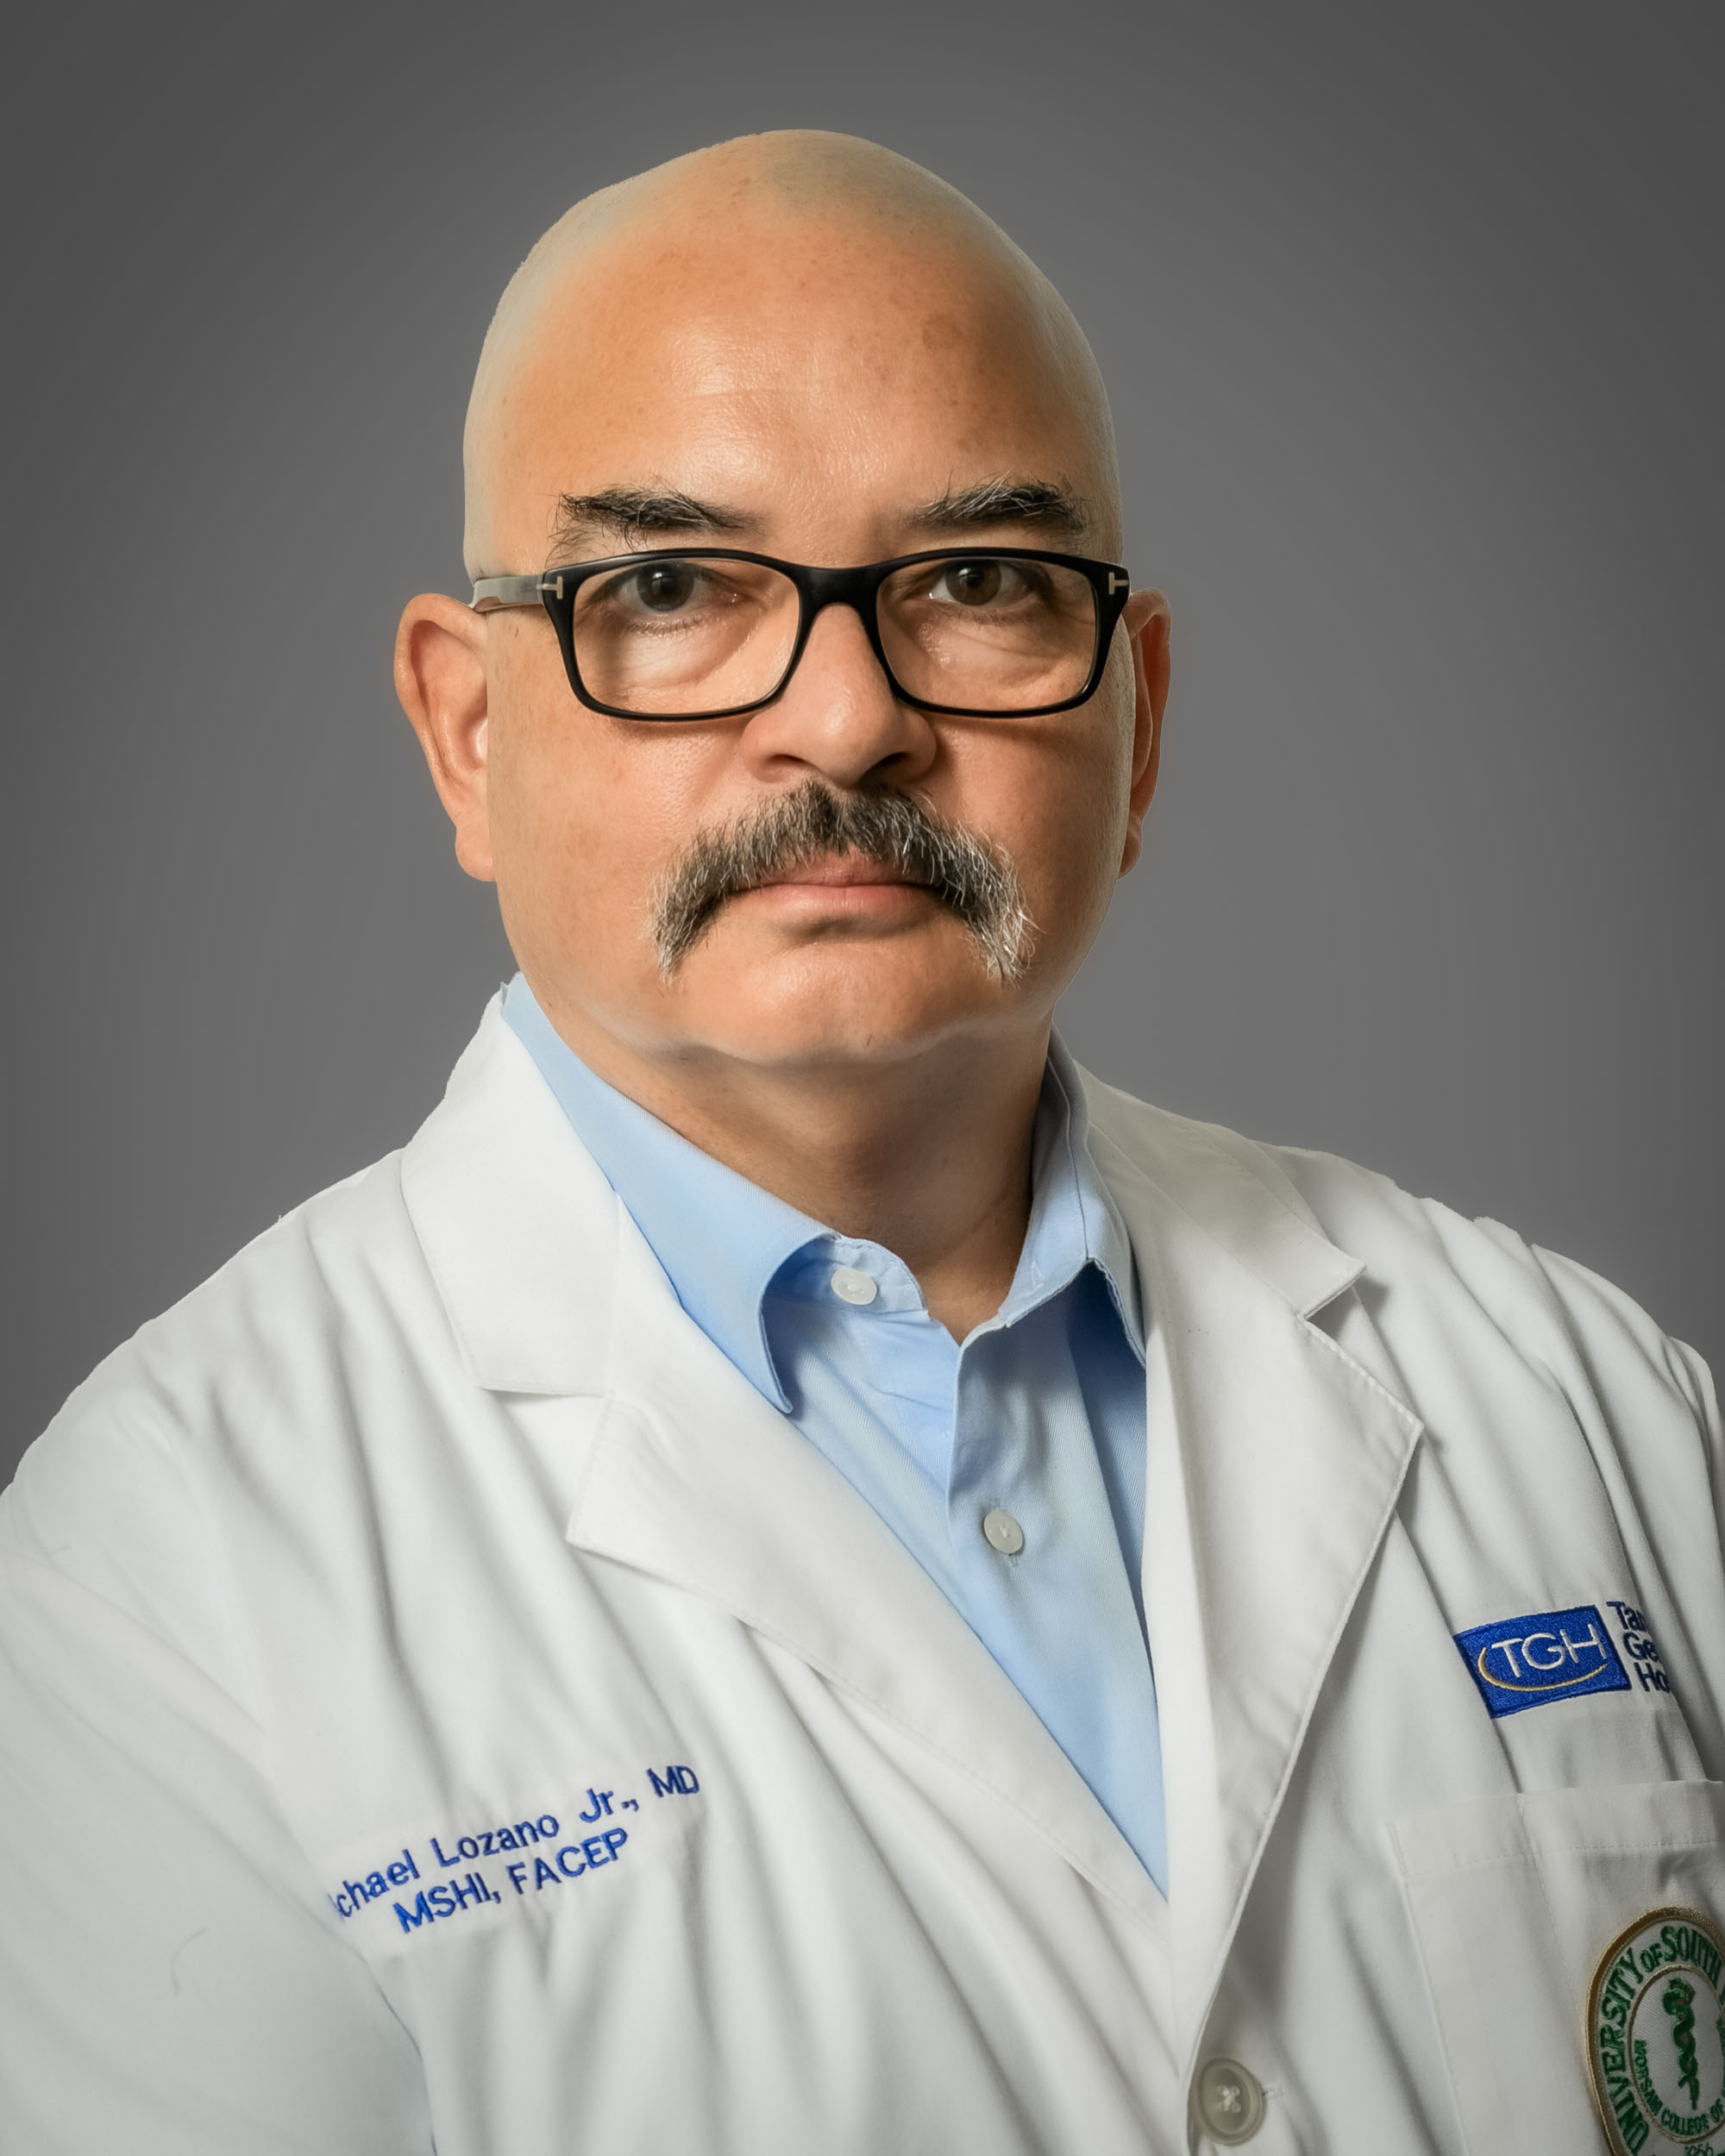 Profile Picture of Michael Lozano, MD, MSHI